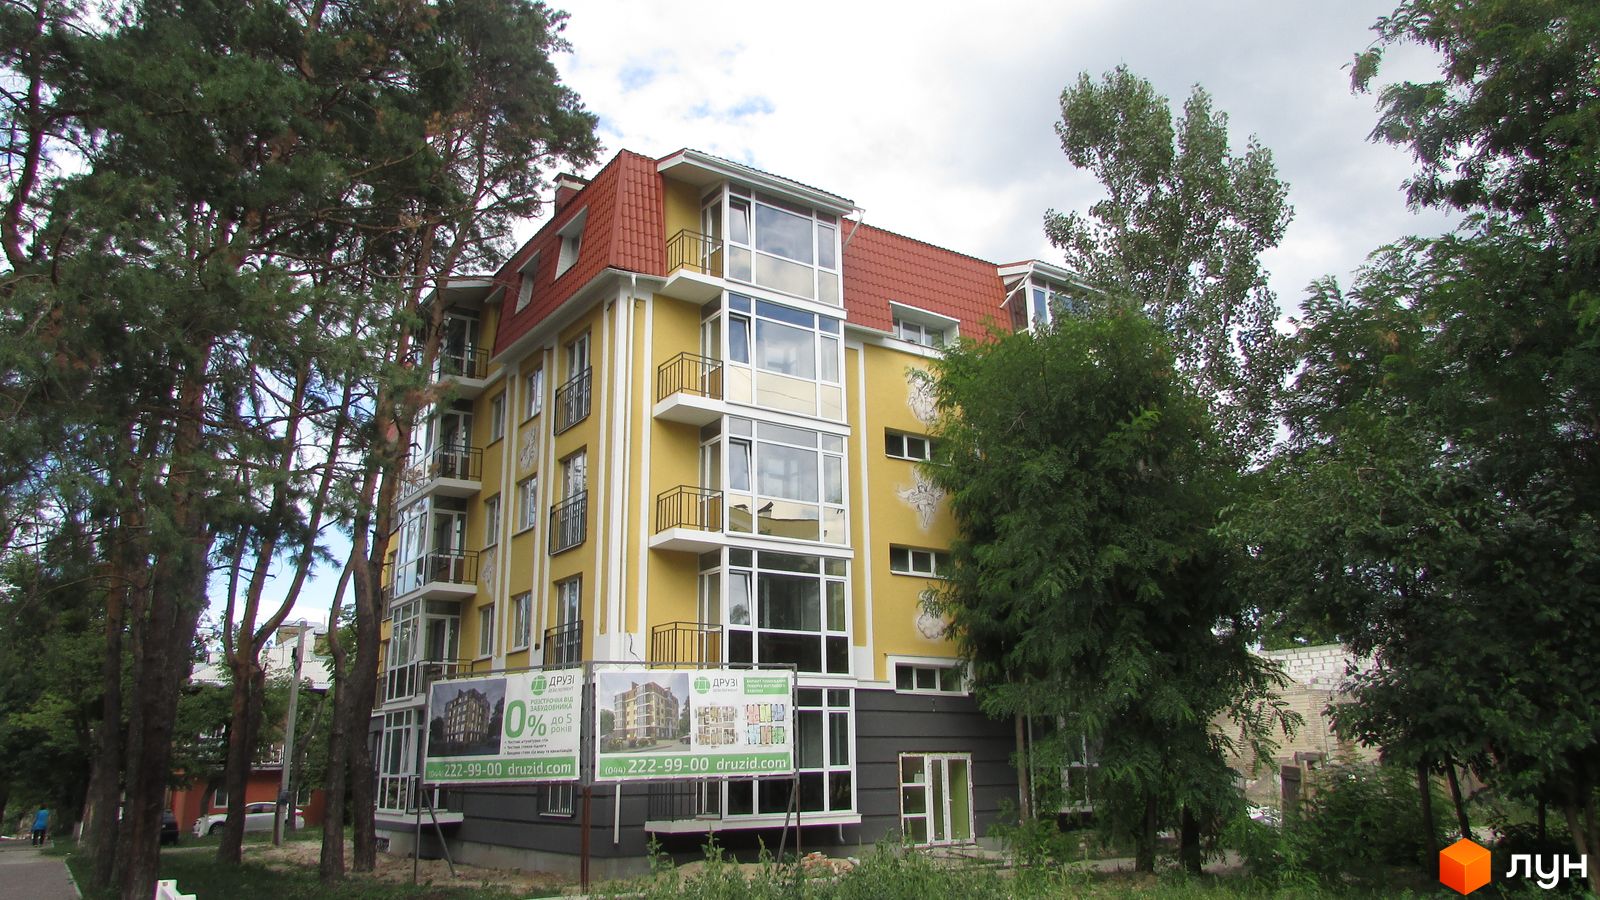 Моніторинг будівництва Клубний будинок „Покровська, 9“ - Ракурс 1, август 2016